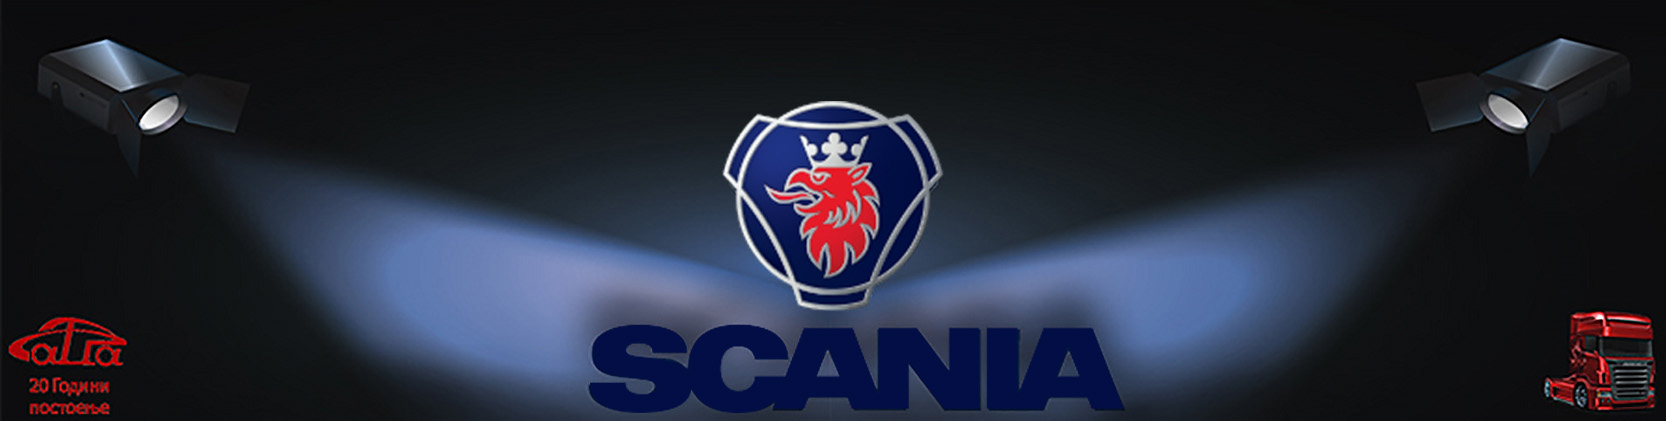 scania logo big